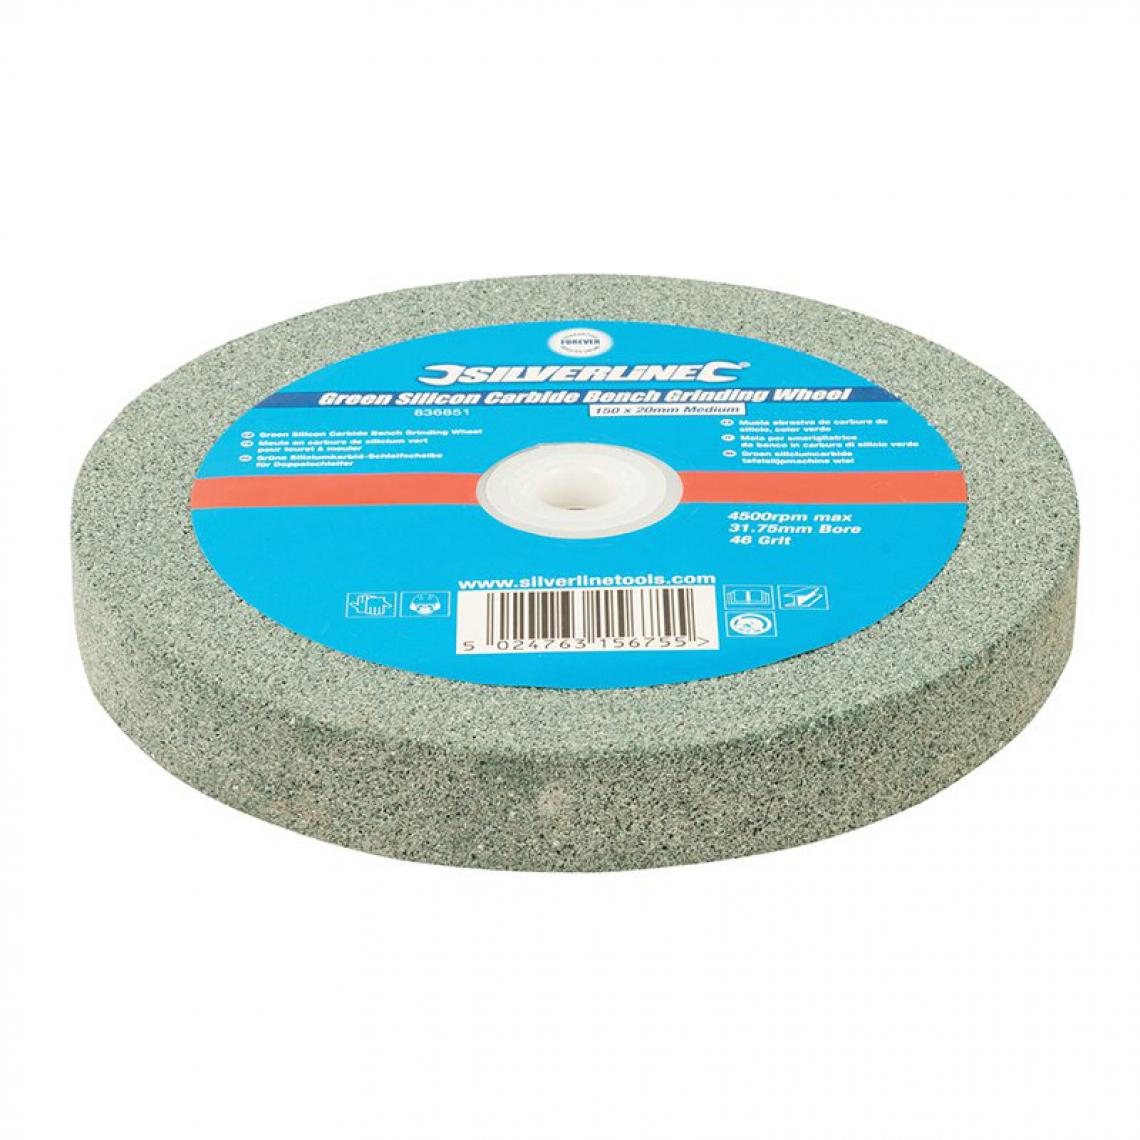 Silverline - Meule en carbure de silicium vert pour touret à meuler - 150 x 20 mm - Grain moyen - Accessoires meulage